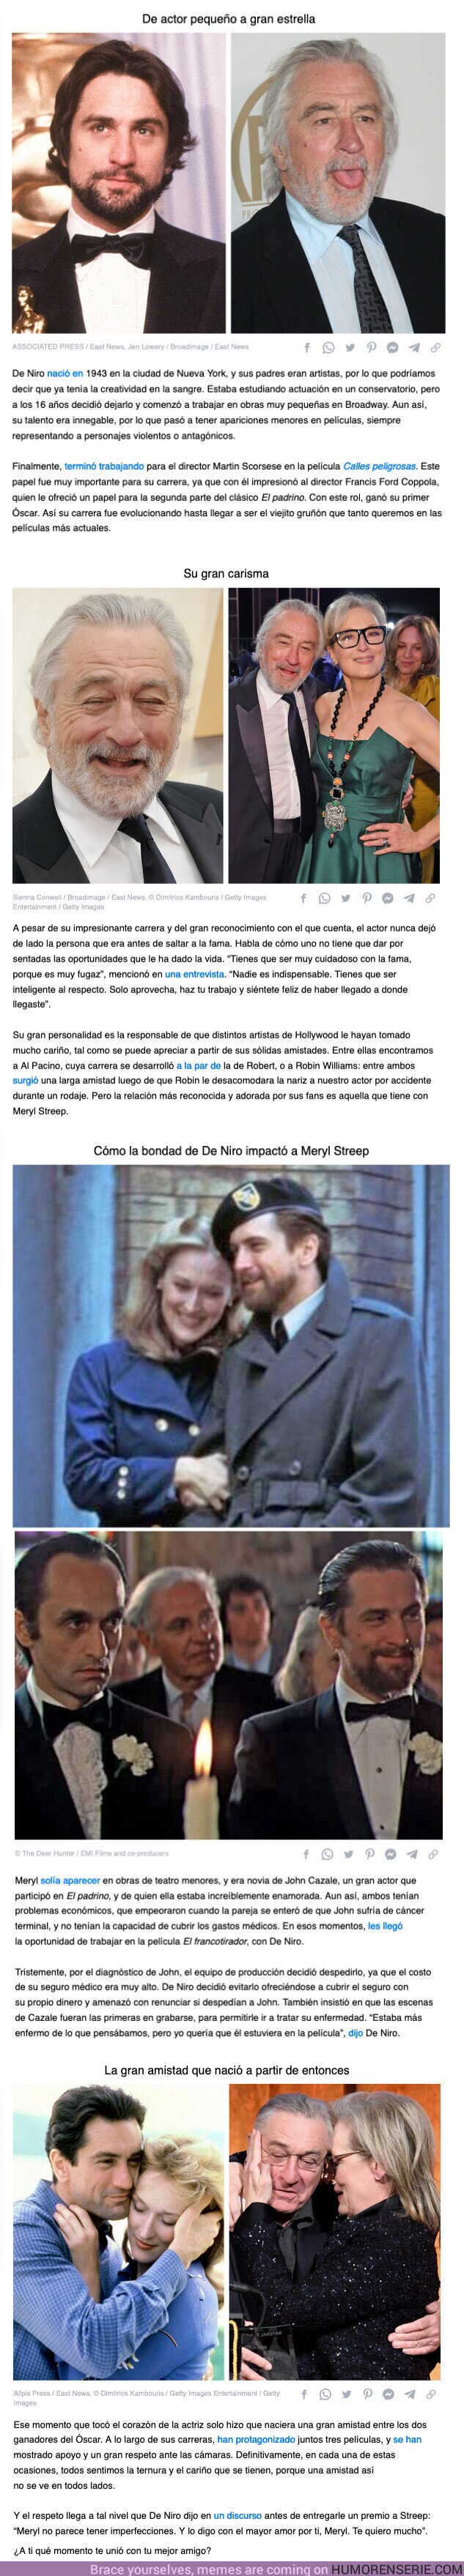 105907 - GALERÍA: Cómo la bondad de Robert De Niro lo llevó a tener una amistad tan fuerte como el acero con Meryl Streep